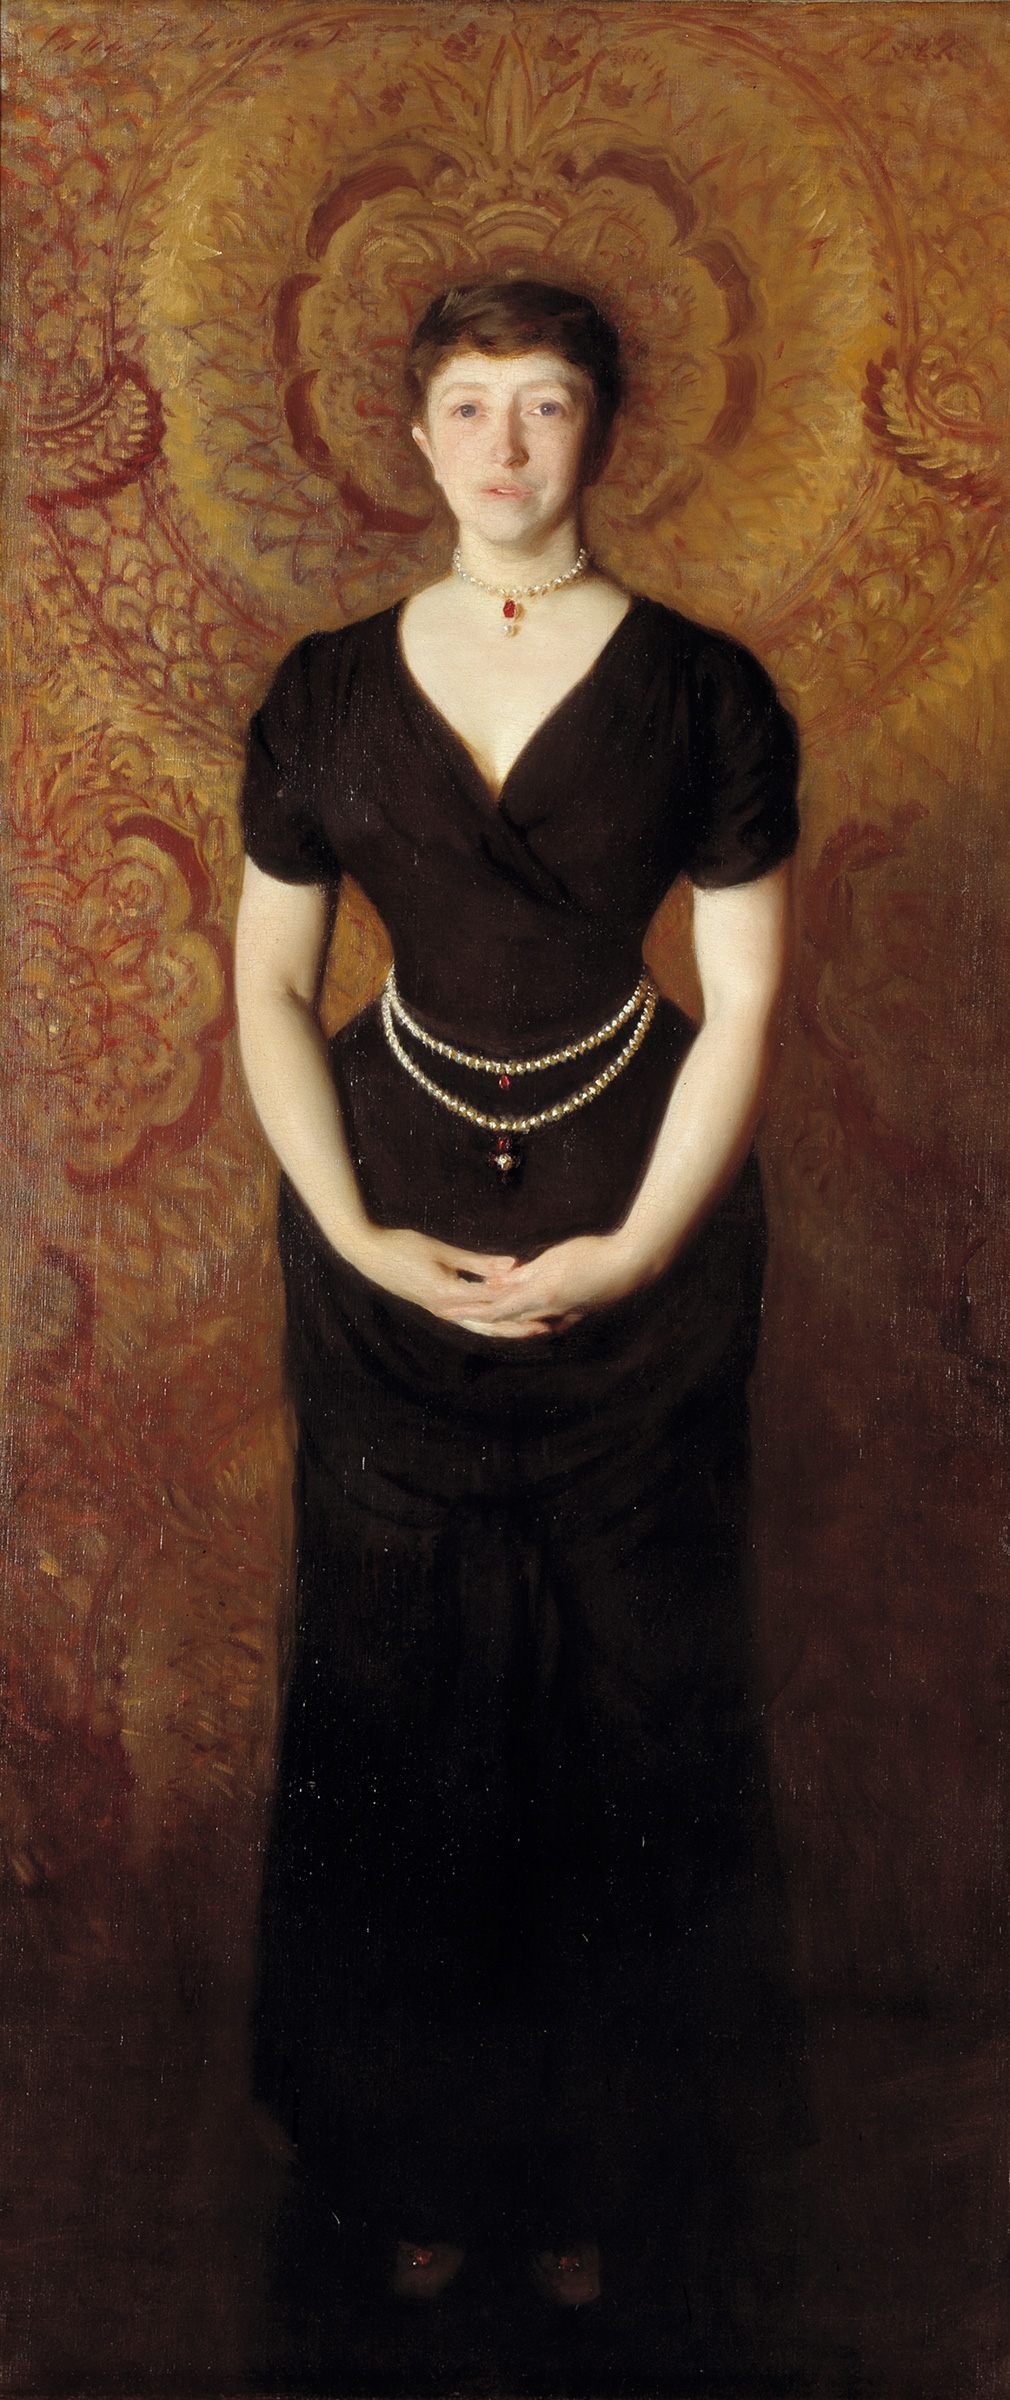 Portrait of Isabella Stewart Gardner by John Singer Sargent - 1888 - 190 x 80 cm Isabella Stewart Gardner Museum